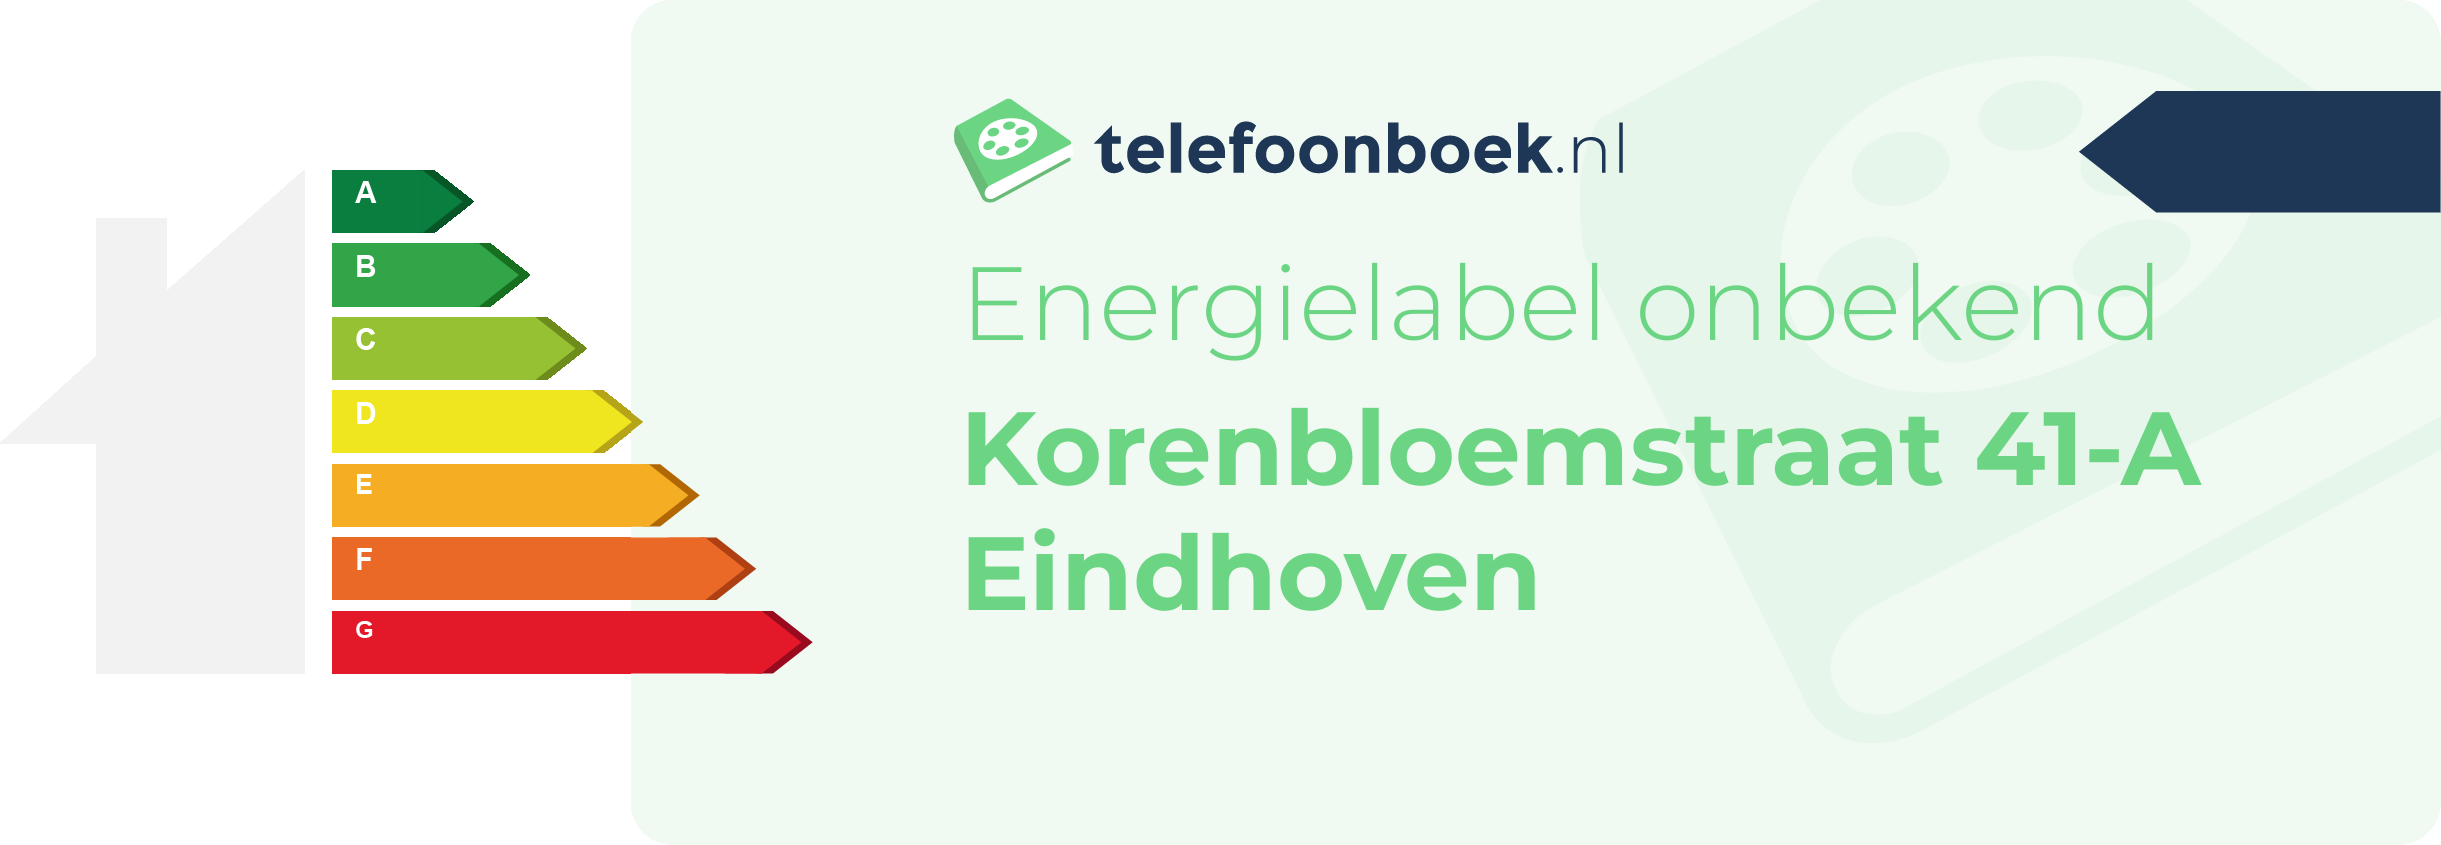 Energielabel Korenbloemstraat 41-A Eindhoven